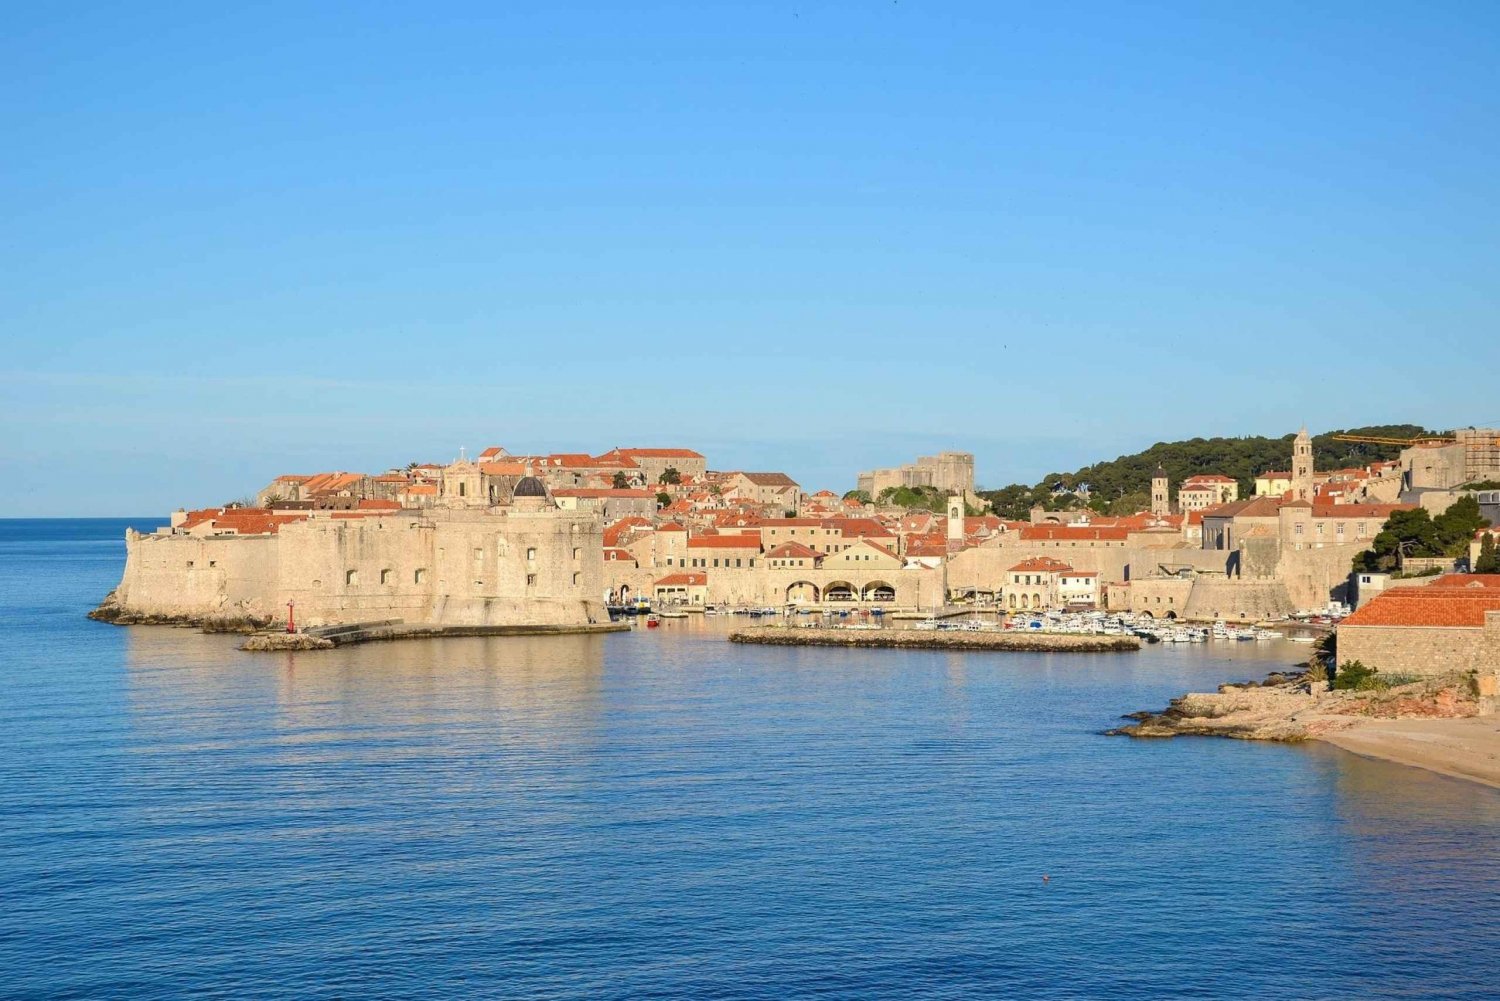 Visite du patrimoine juif de Dubrovnik : Lever le voile sur le passé